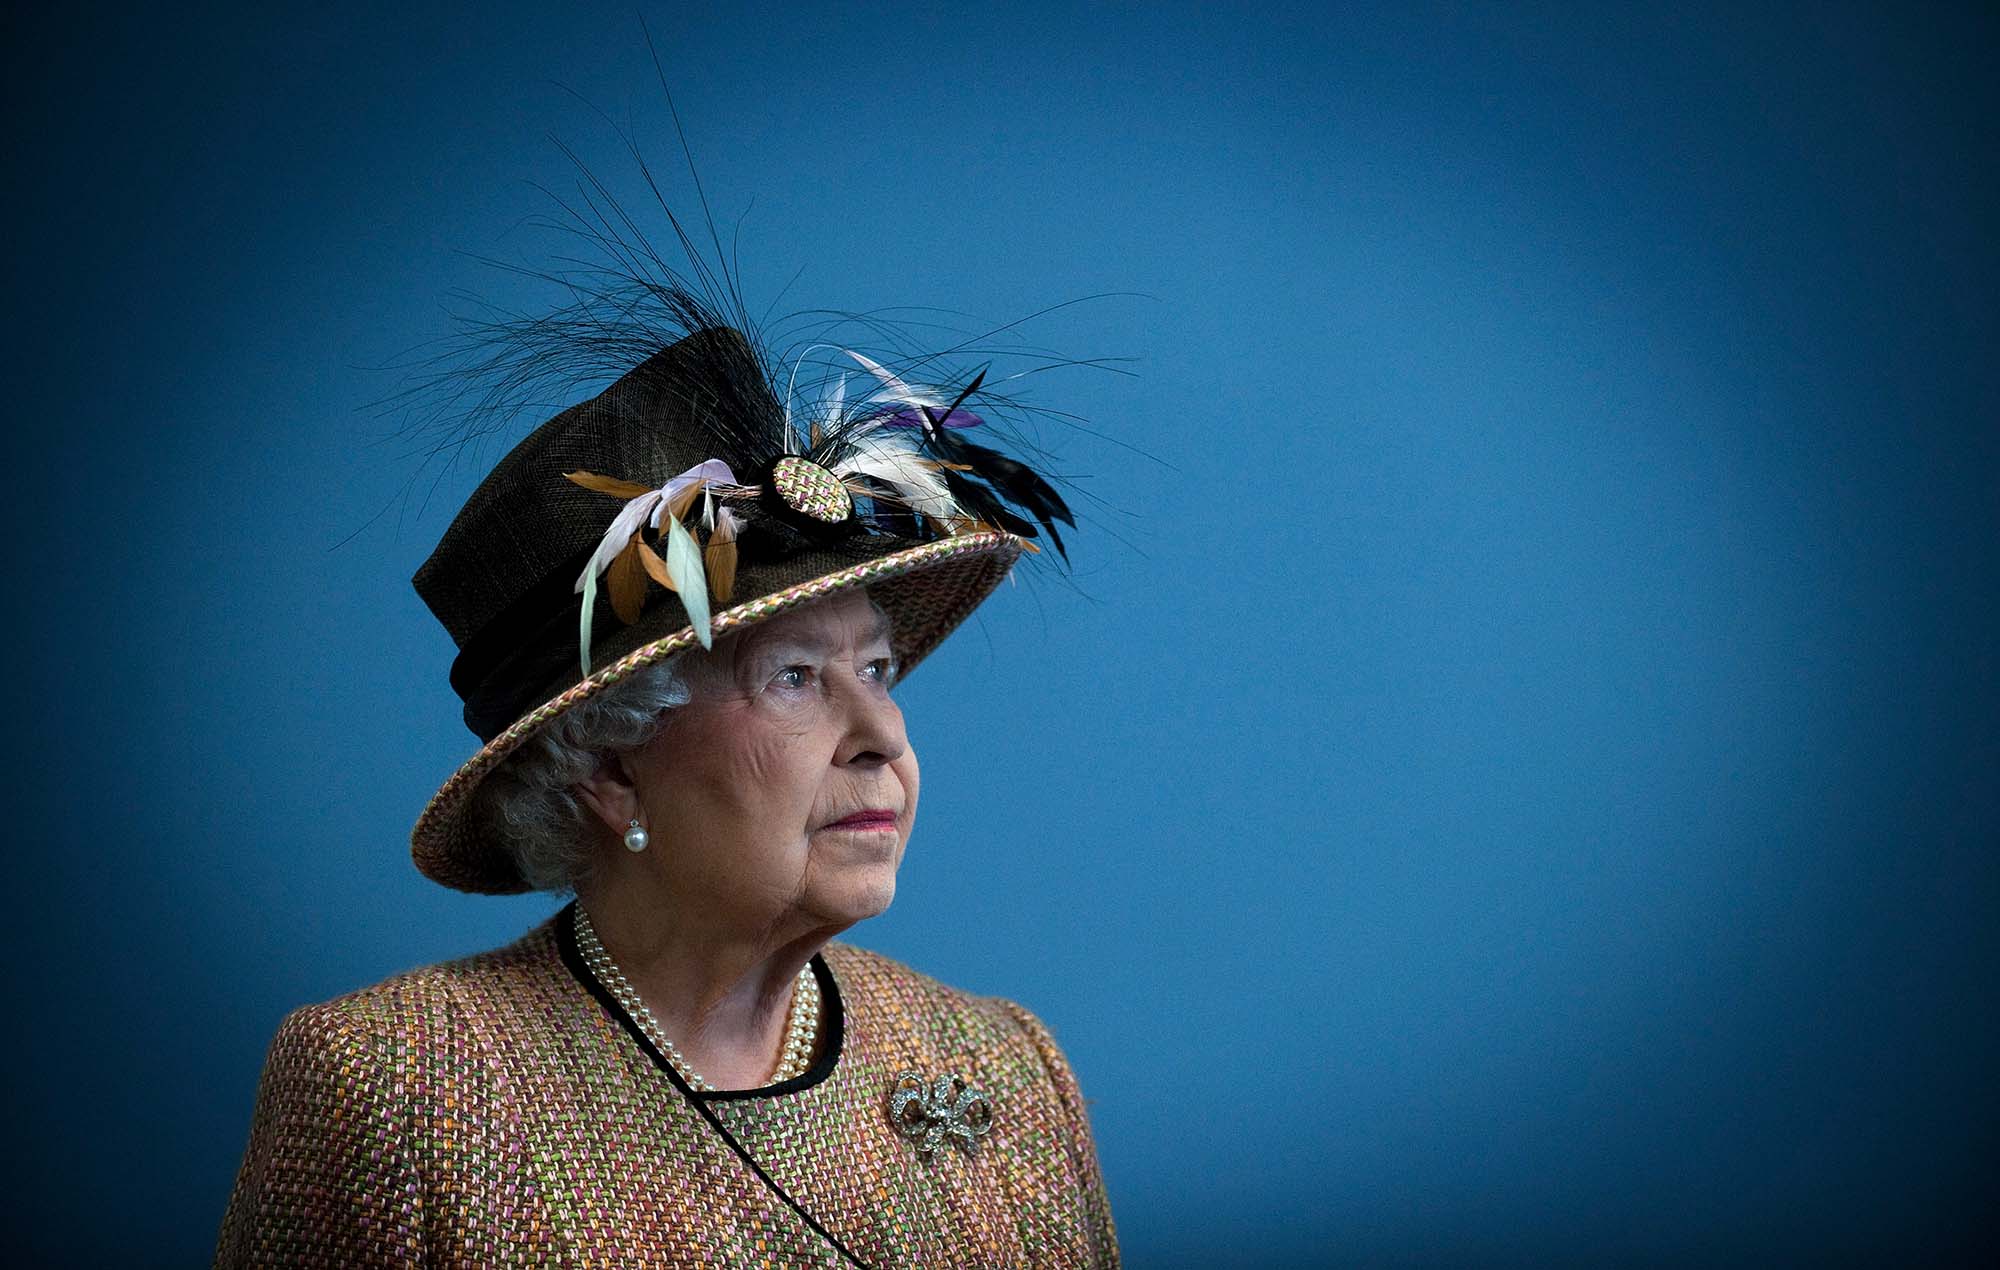 Queen Elizabeth II, 1926 – 2022